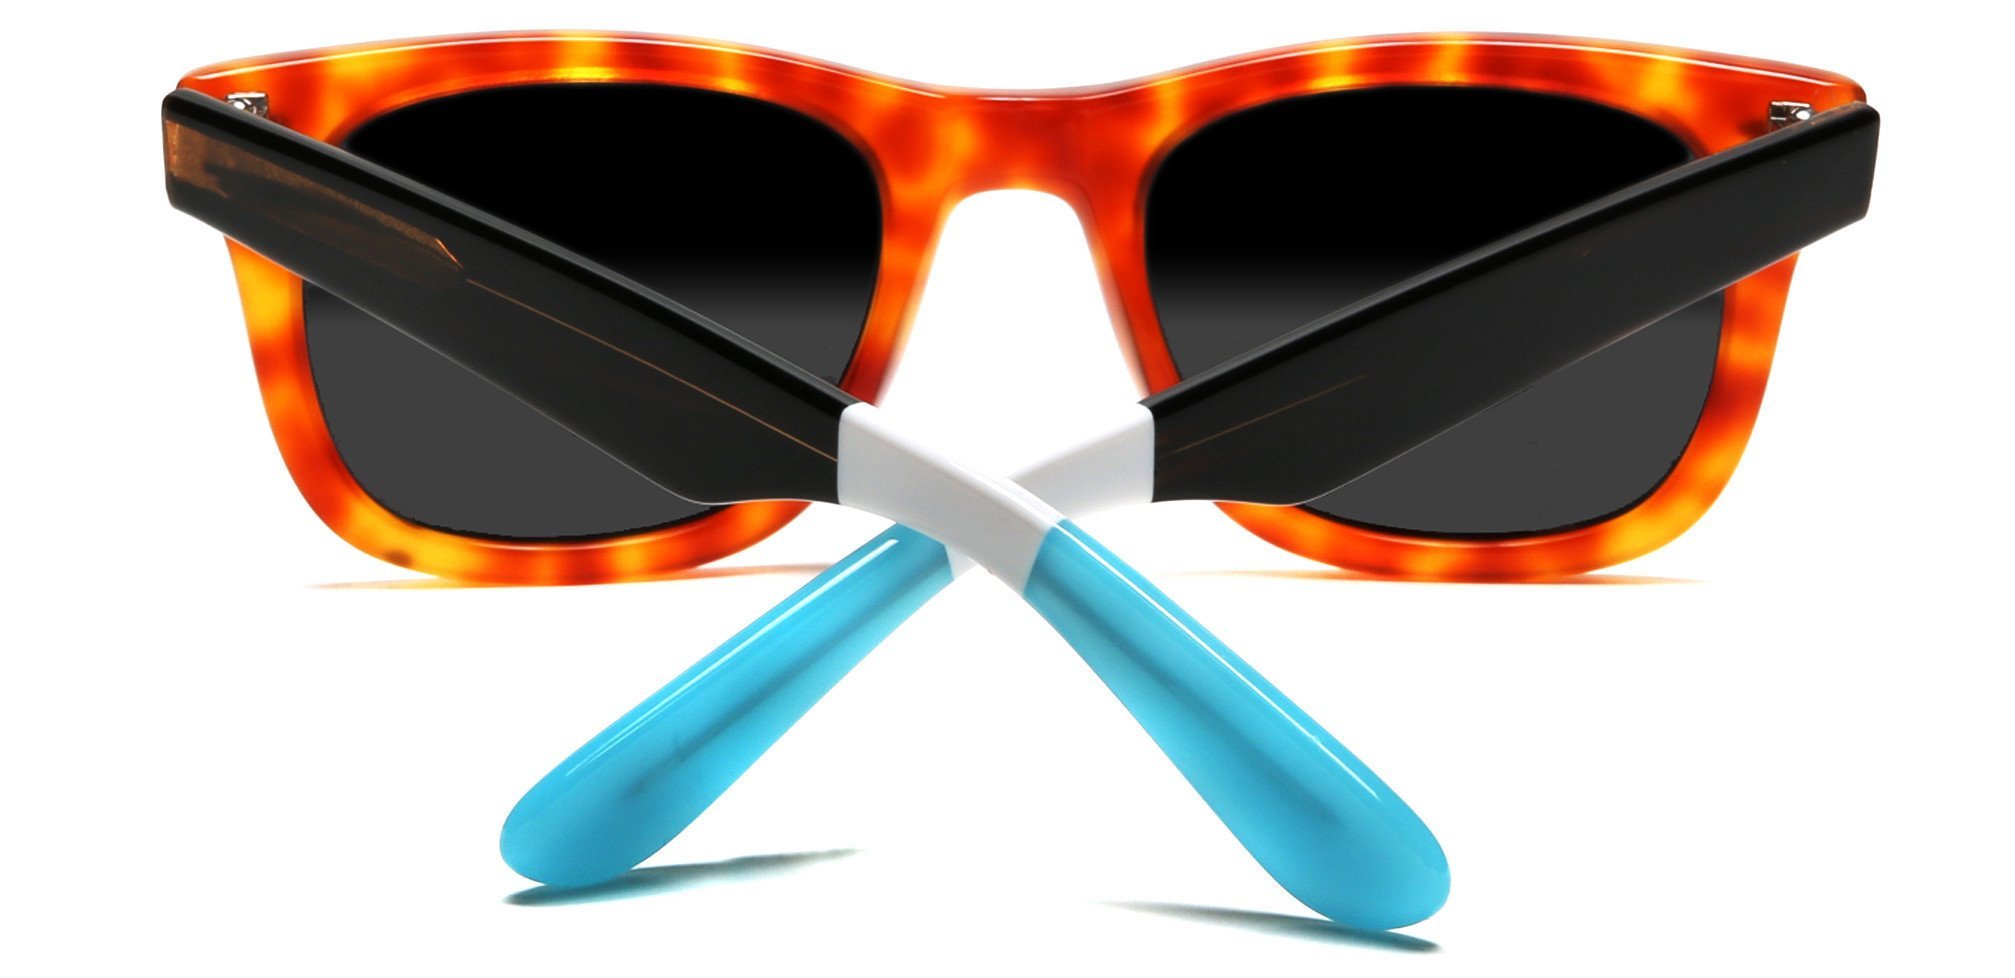 Verona Polarized Horn Rimmed Sunglasses Orange-Samba Shades